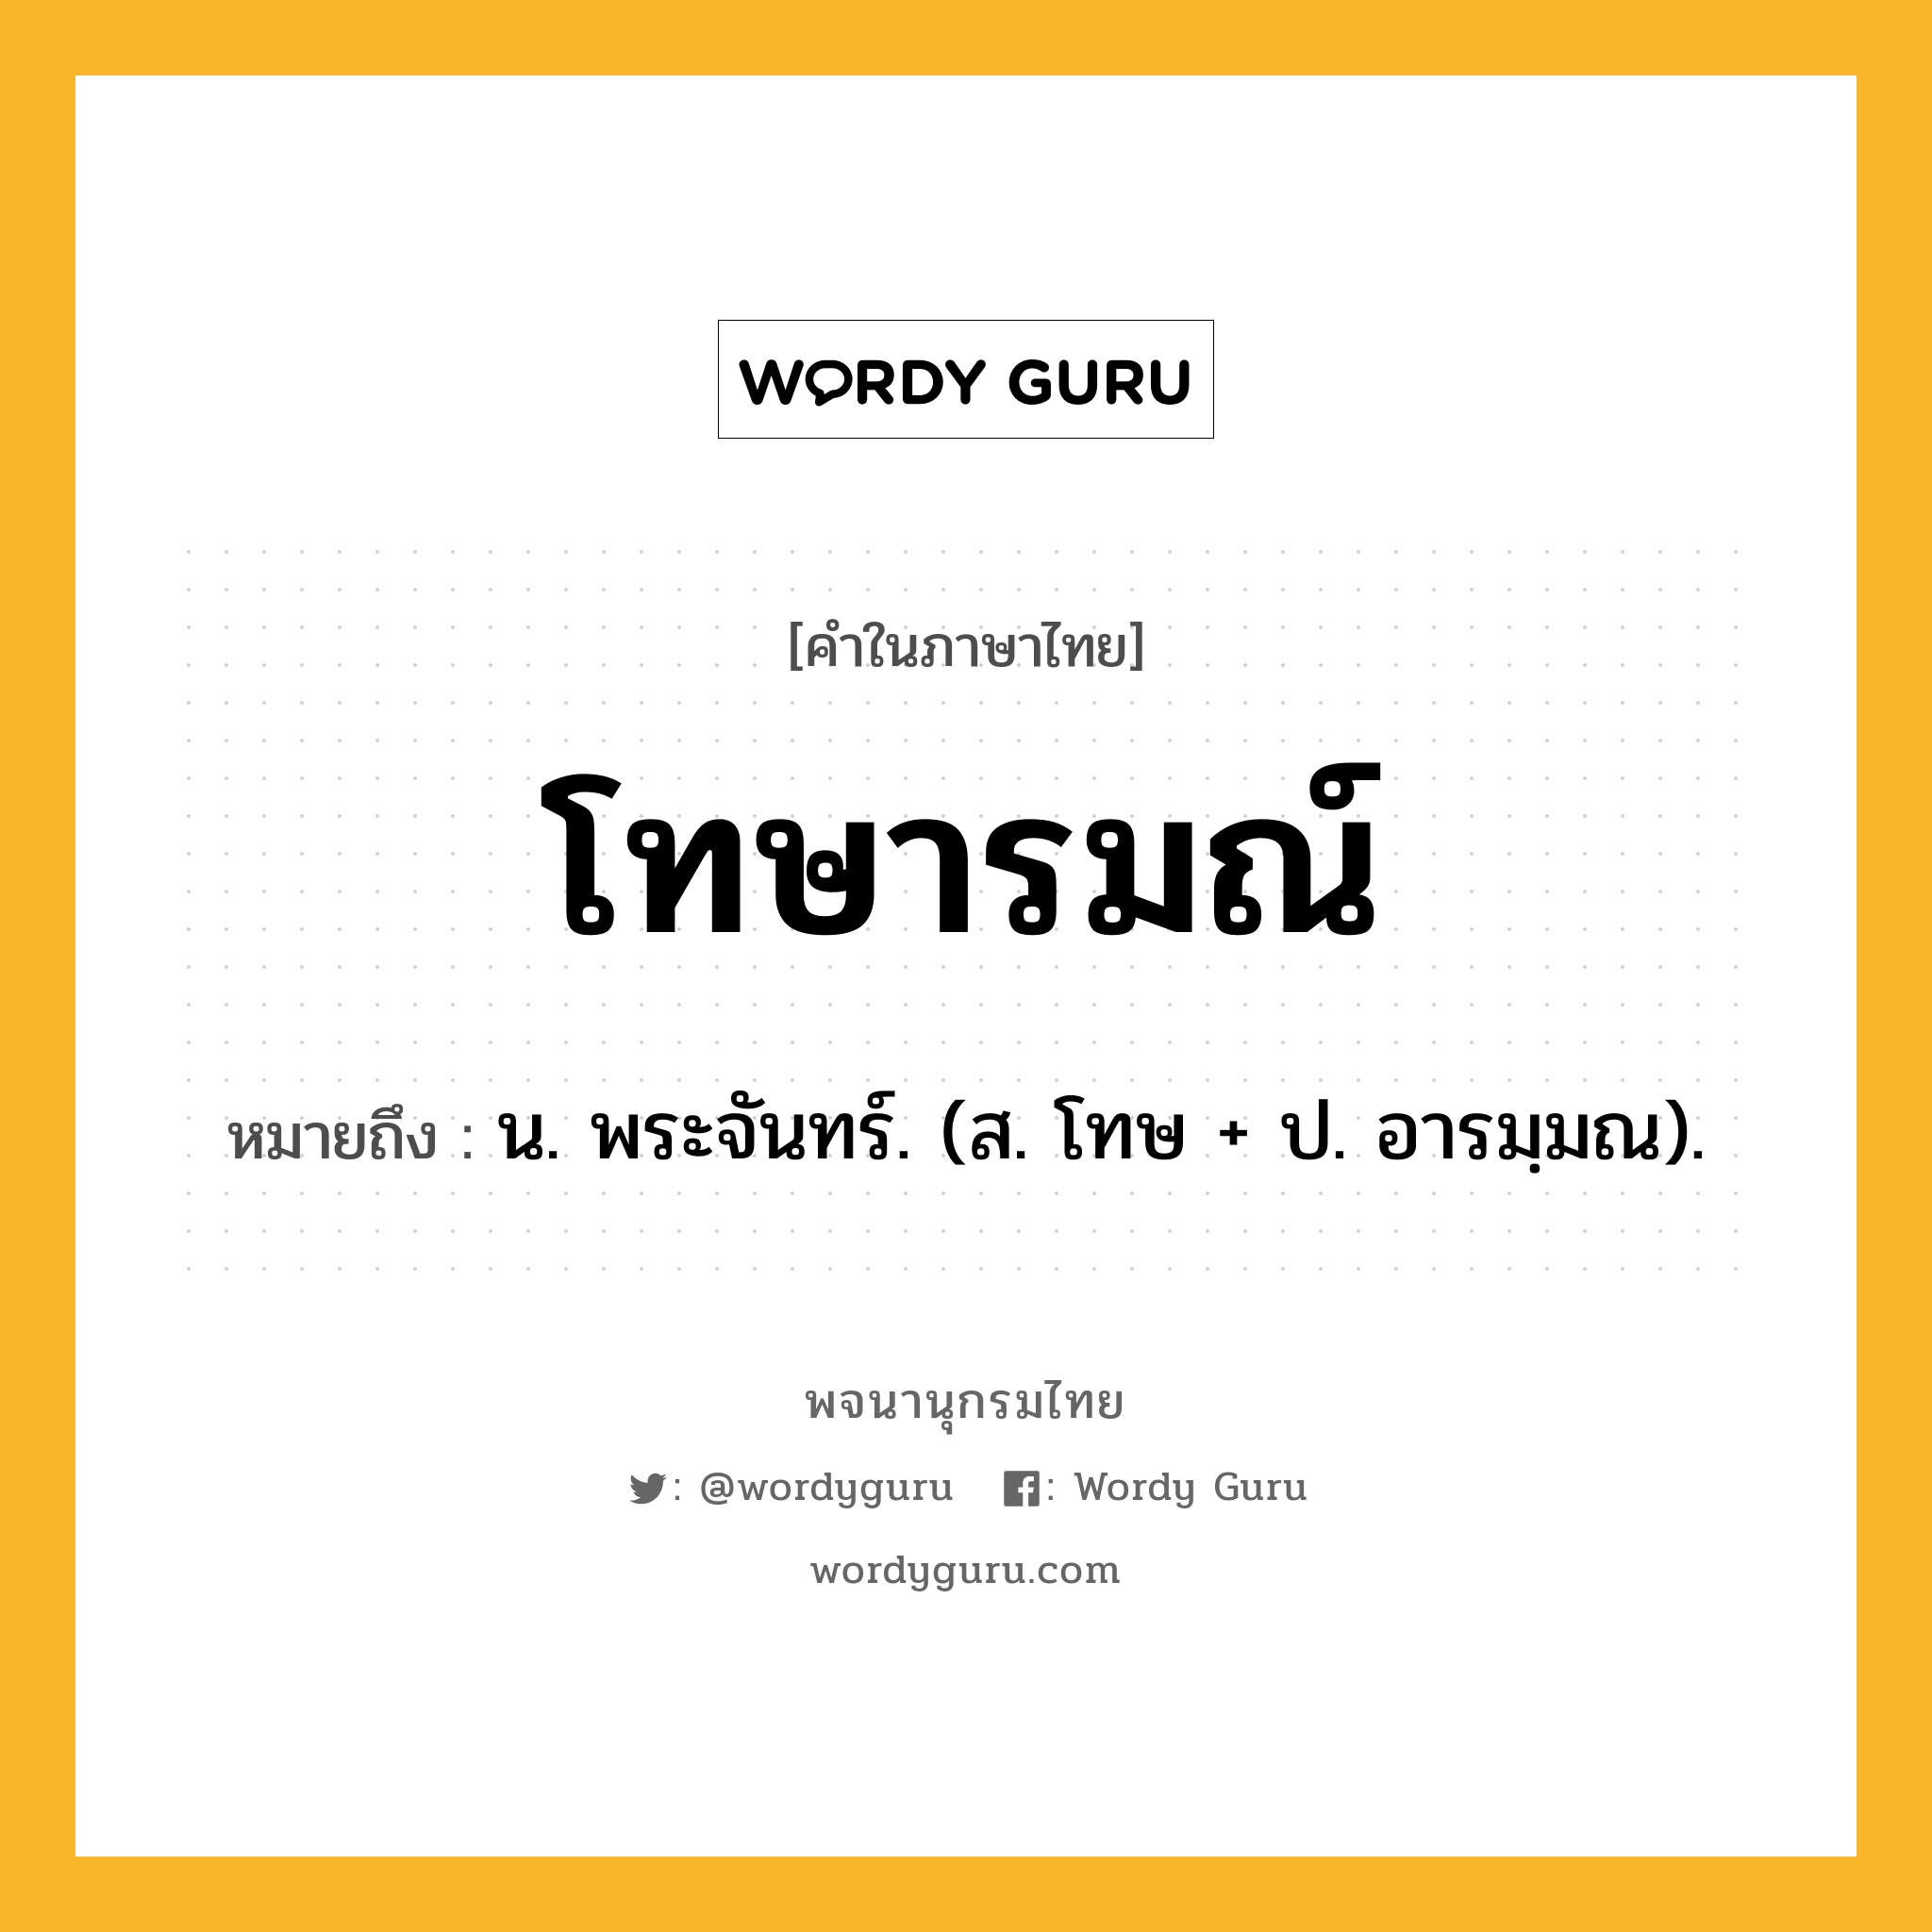 โทษารมณ์ หมายถึงอะไร?, คำในภาษาไทย โทษารมณ์ หมายถึง น. พระจันทร์. (ส. โทษ + ป. อารมฺมณ).